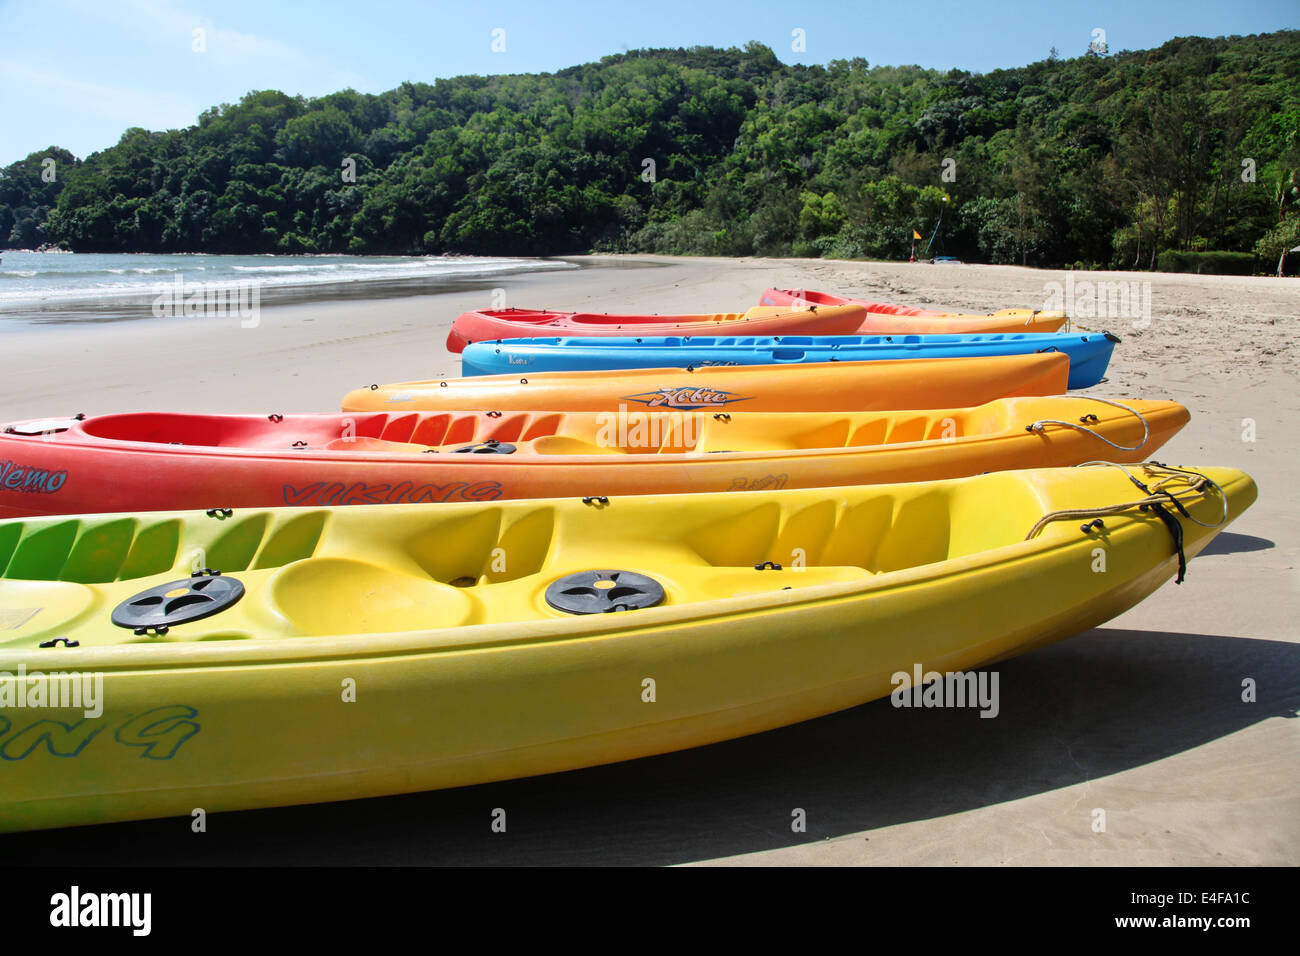 Se trata de una fotografía de canoa en la playa. El agua es para la actividad deportiva. Color naranja. Es un centro de deportes acuáticos cerca del mar Foto de stock